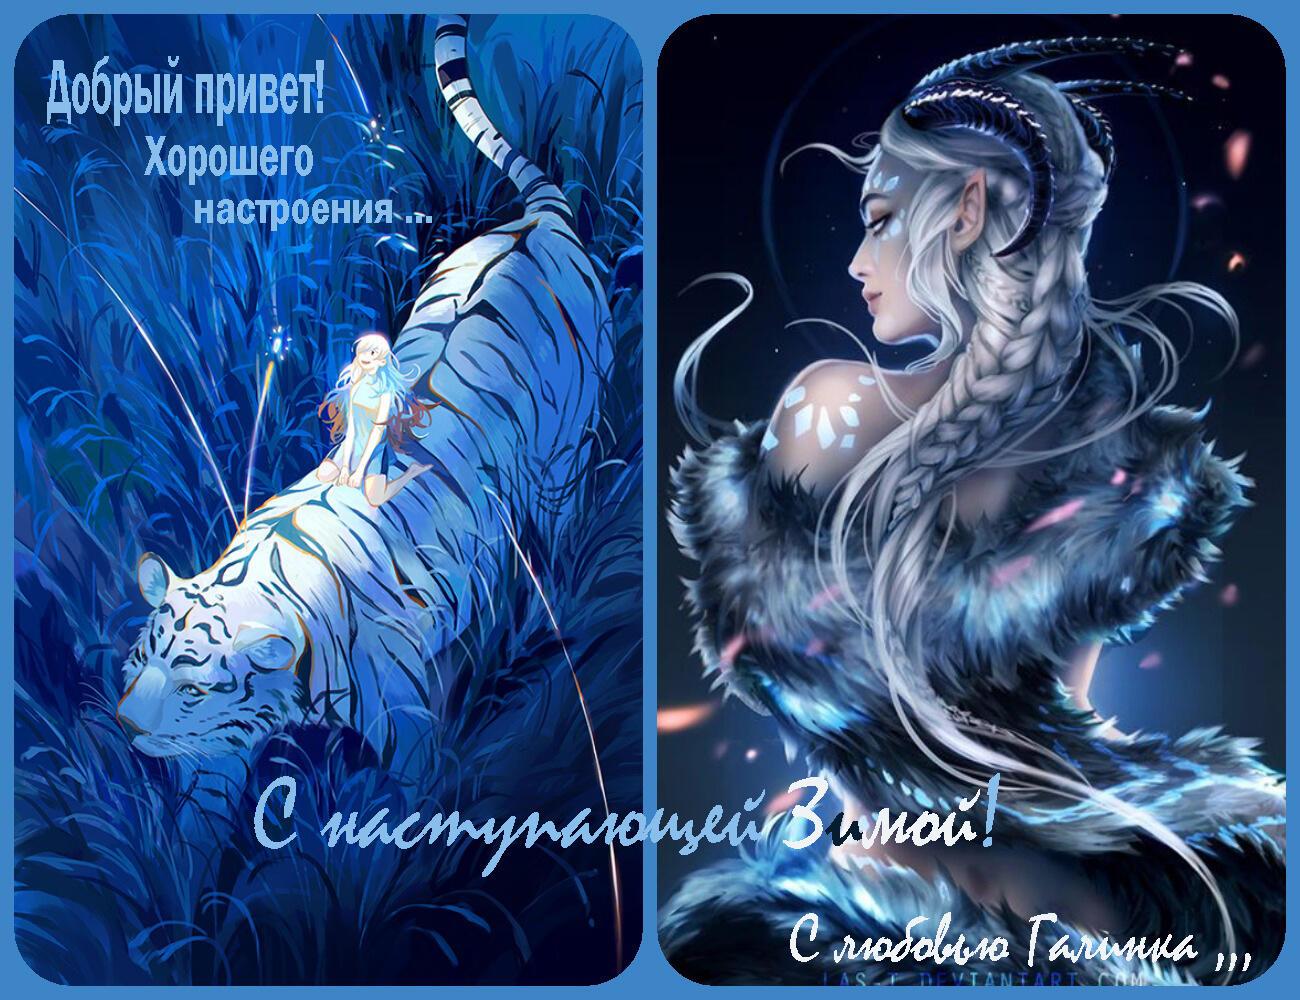 Синего тигра по осени гонит зима      Галинка Багрецова